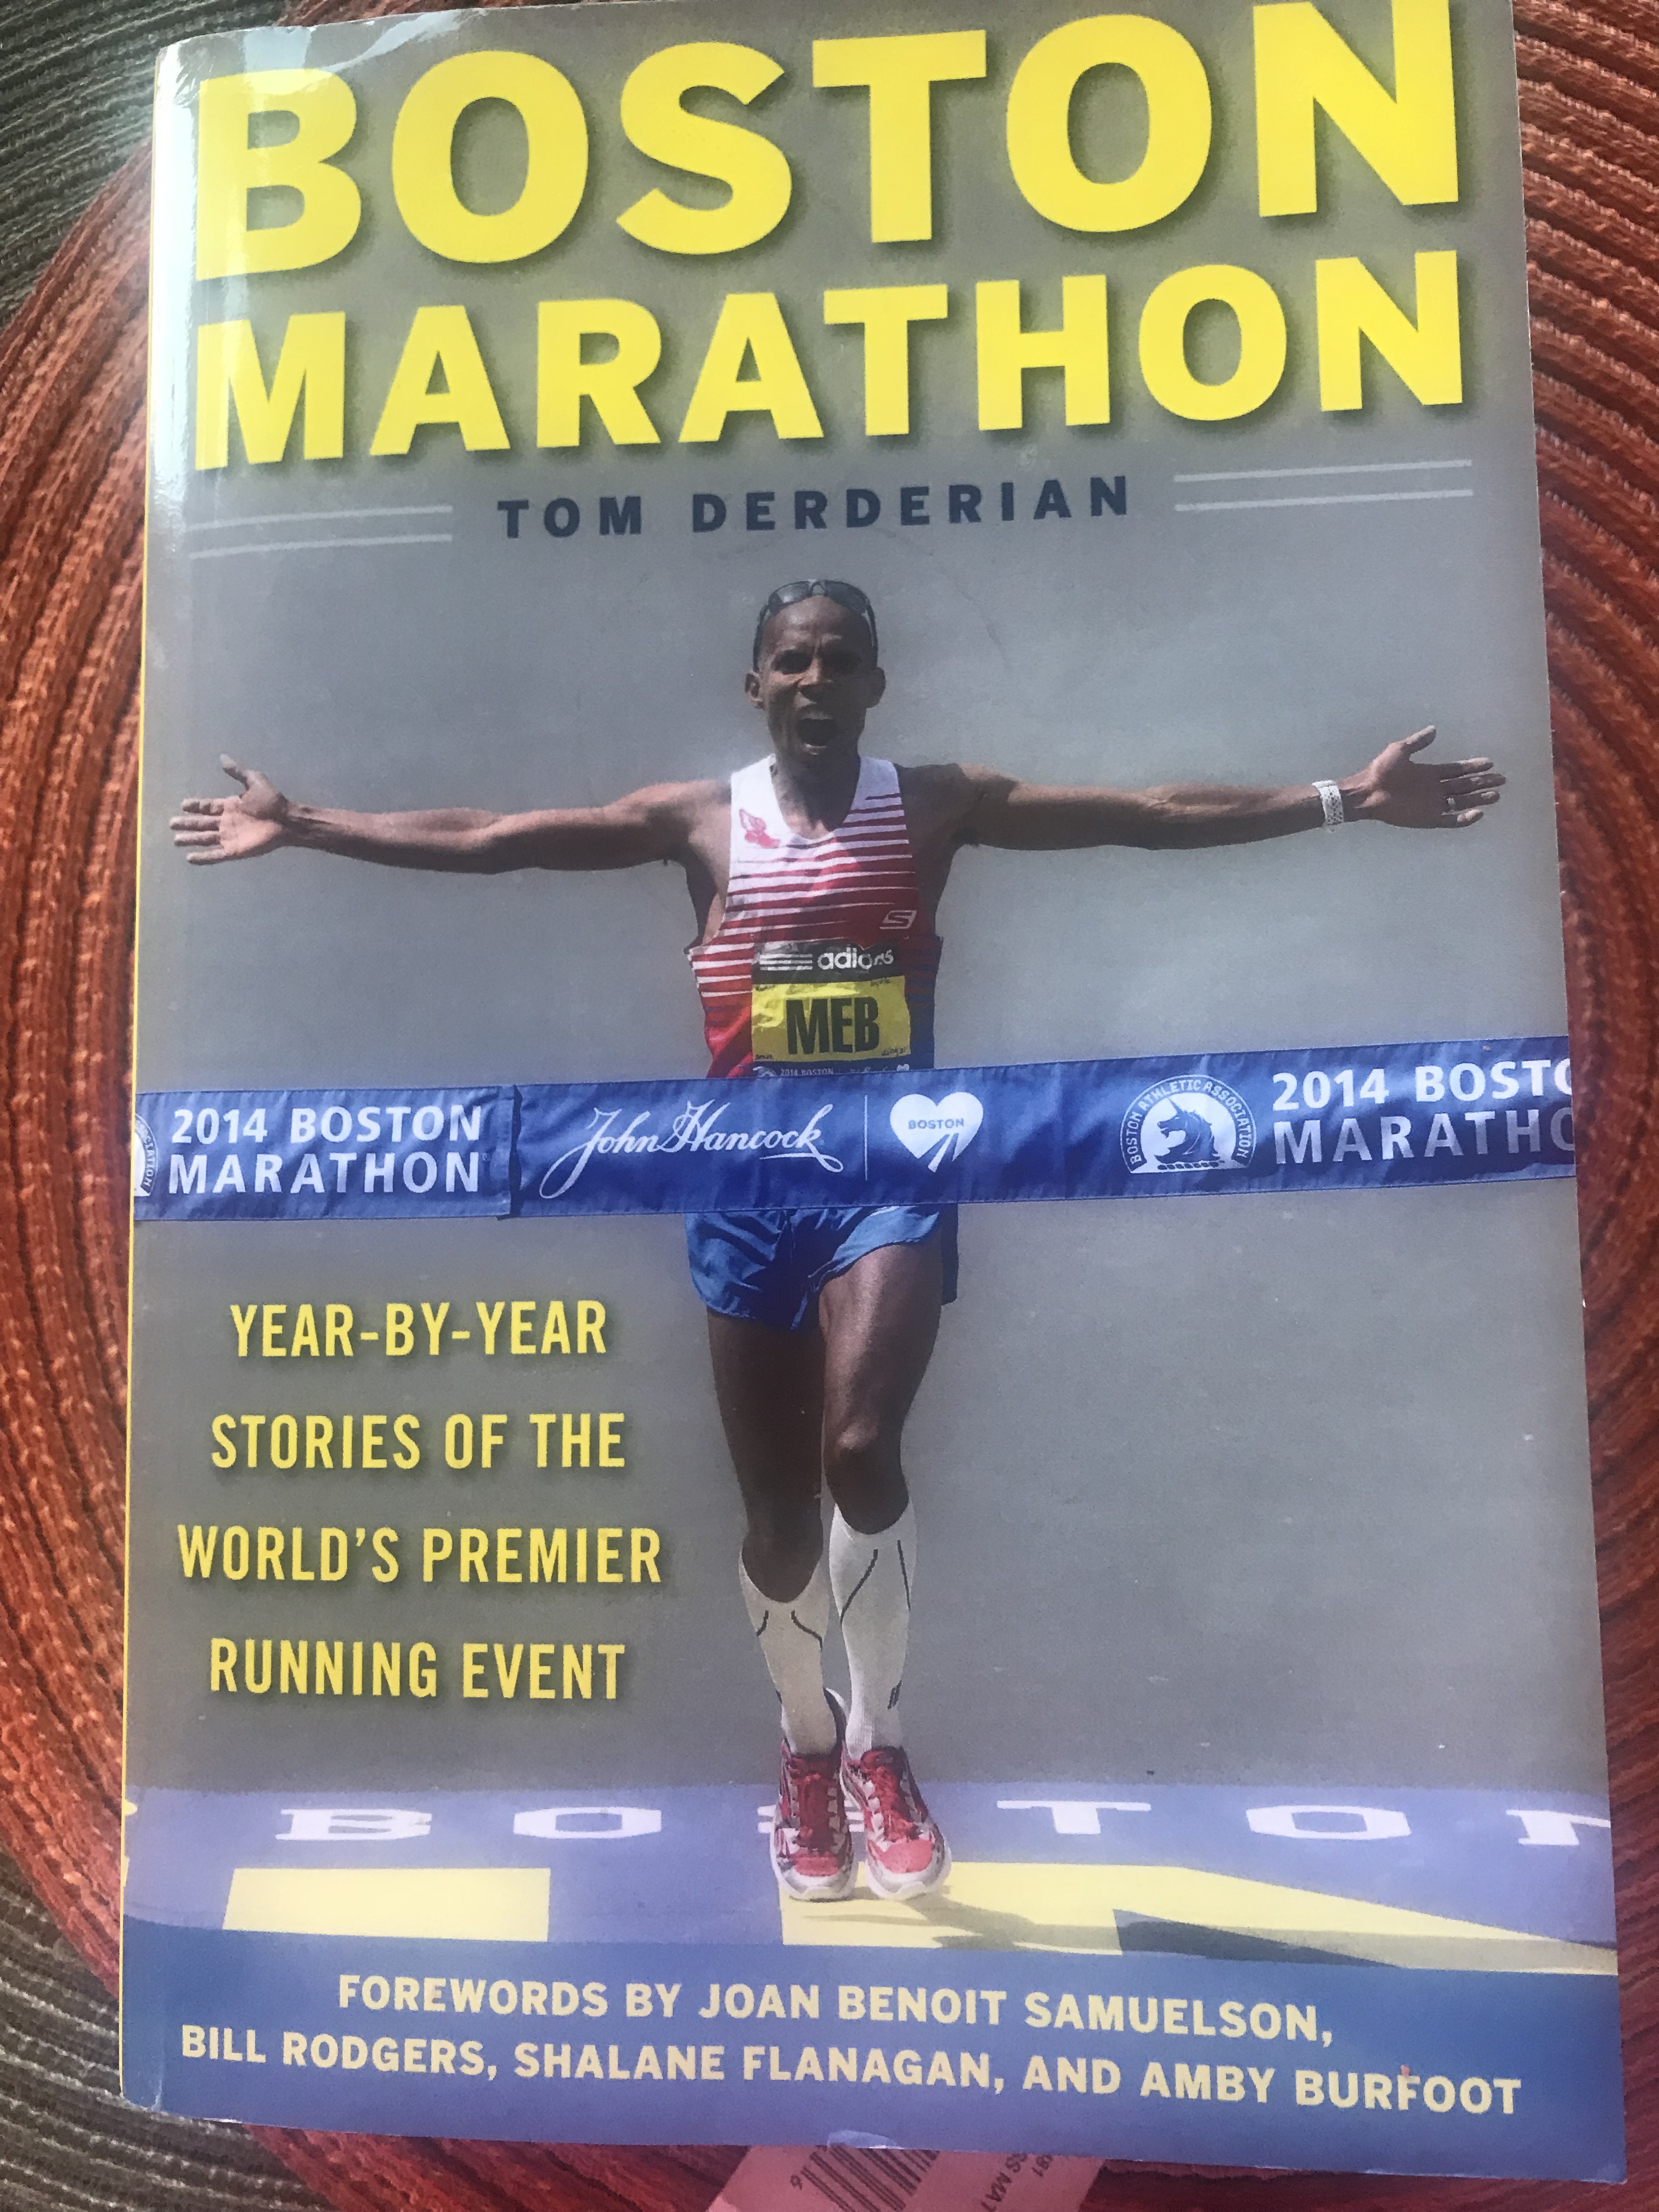 Boston Marathon by Tom Derderian